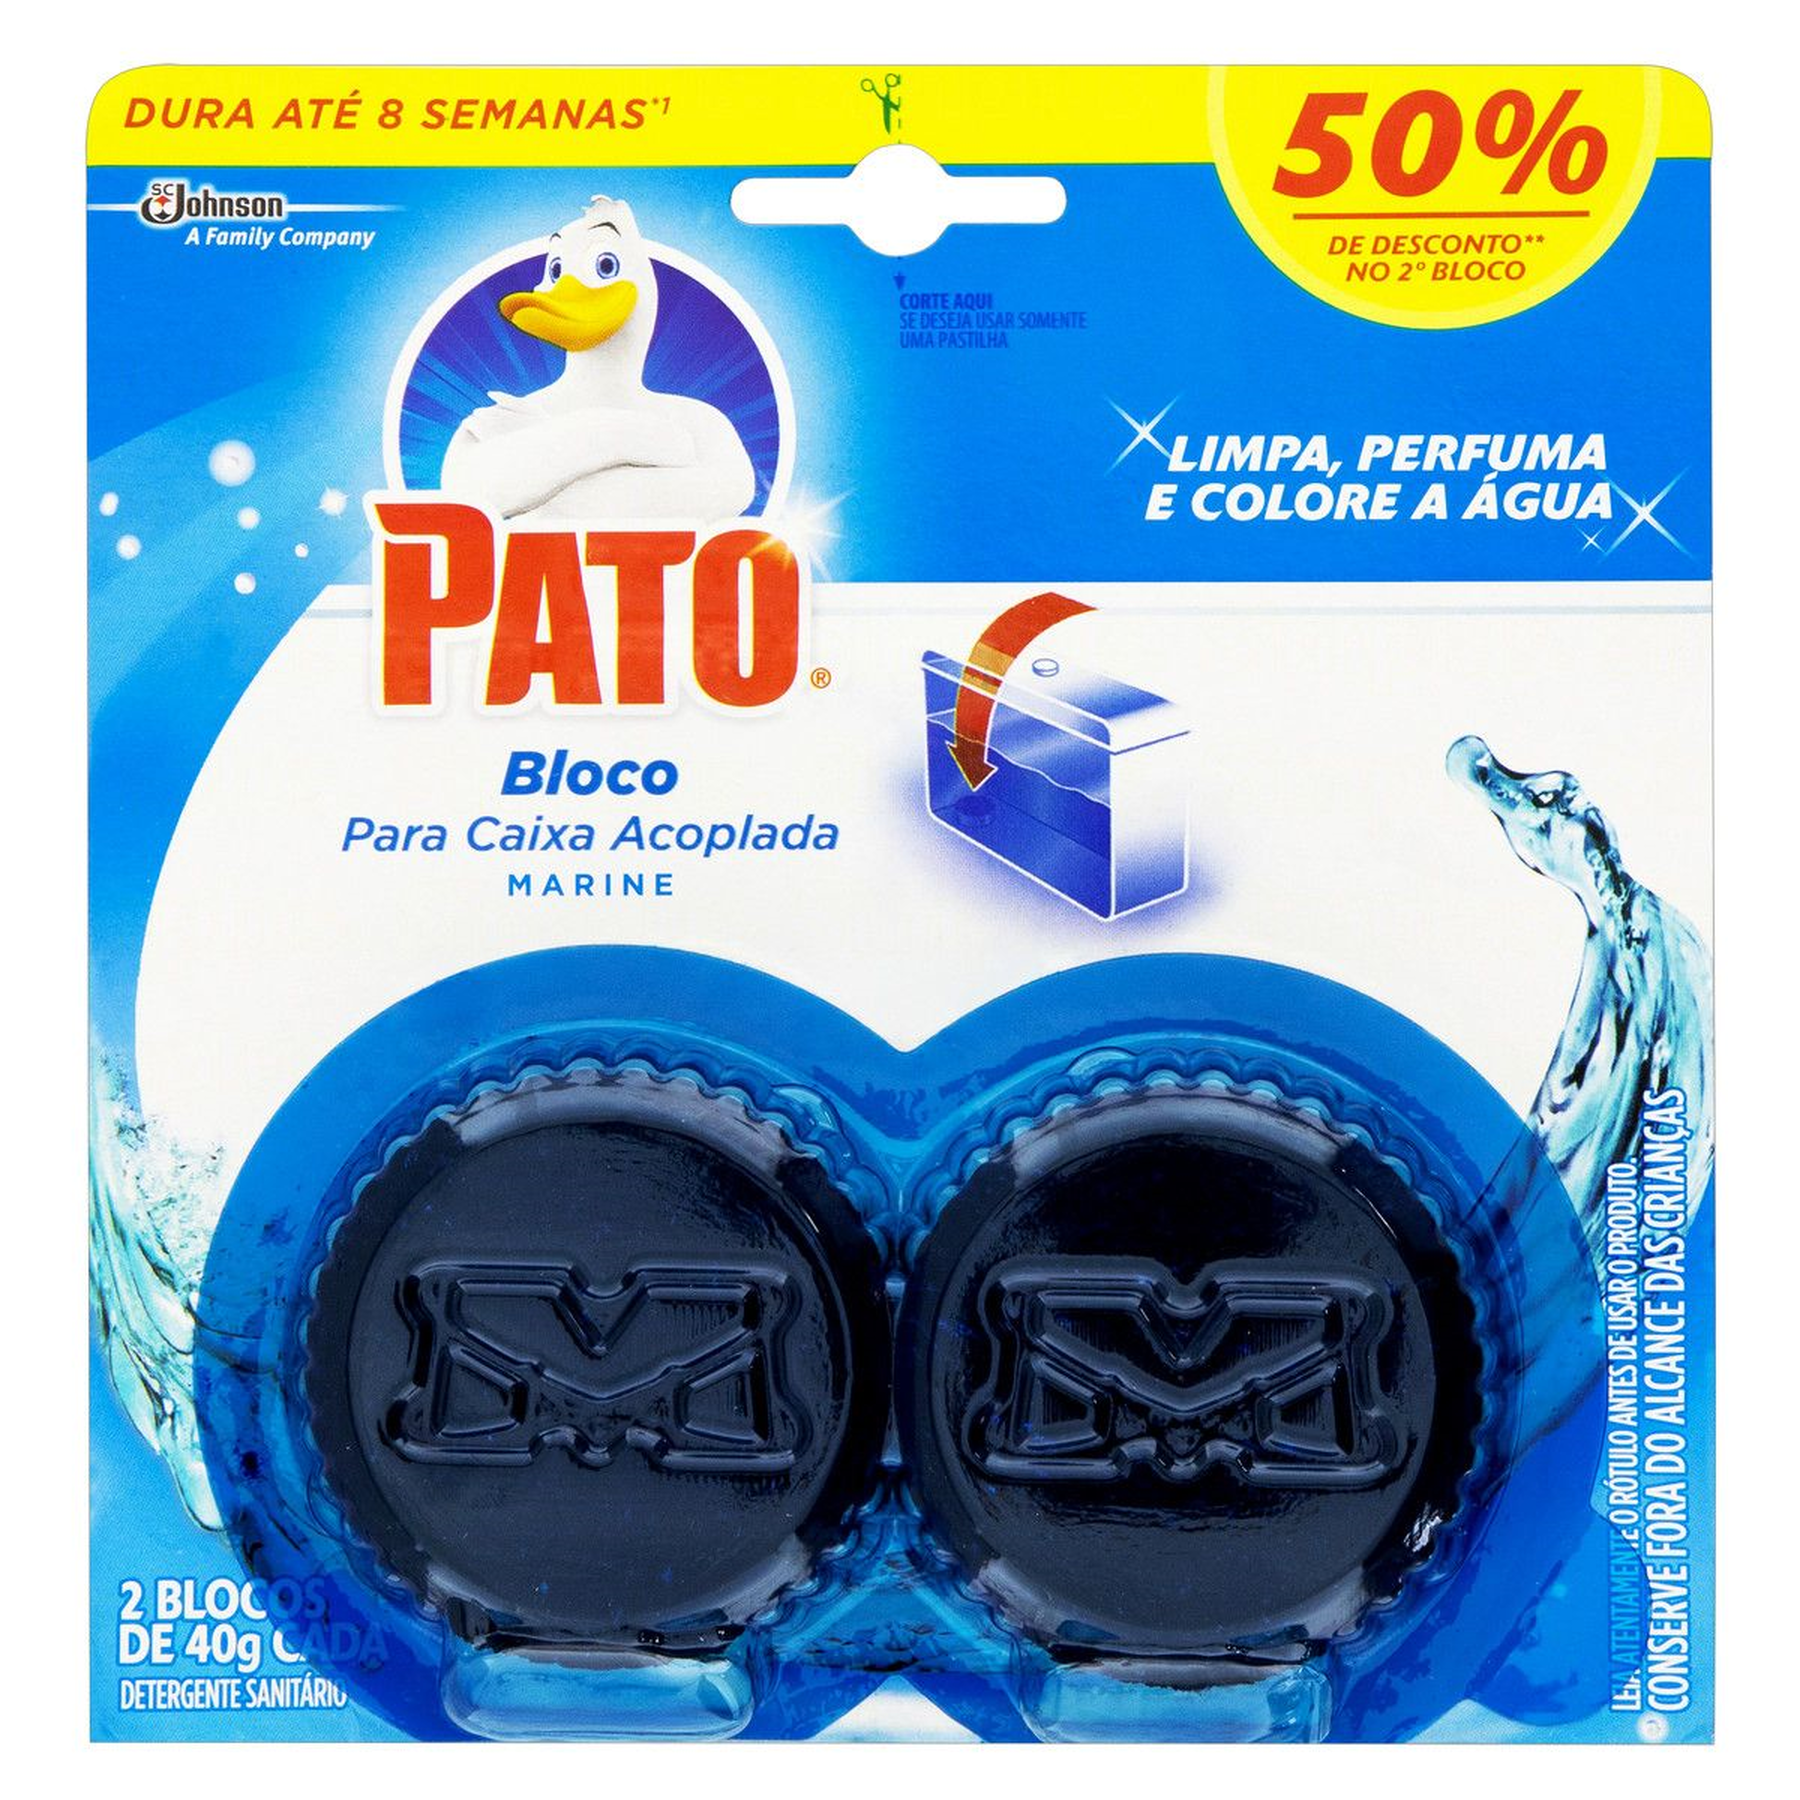 Detergente Sanitário Bloco para Caixa Acoplada Marine Pato 40g Cada C/2 Unidades - Embalagem Grátis 50% de Desconto no 2°Bloco